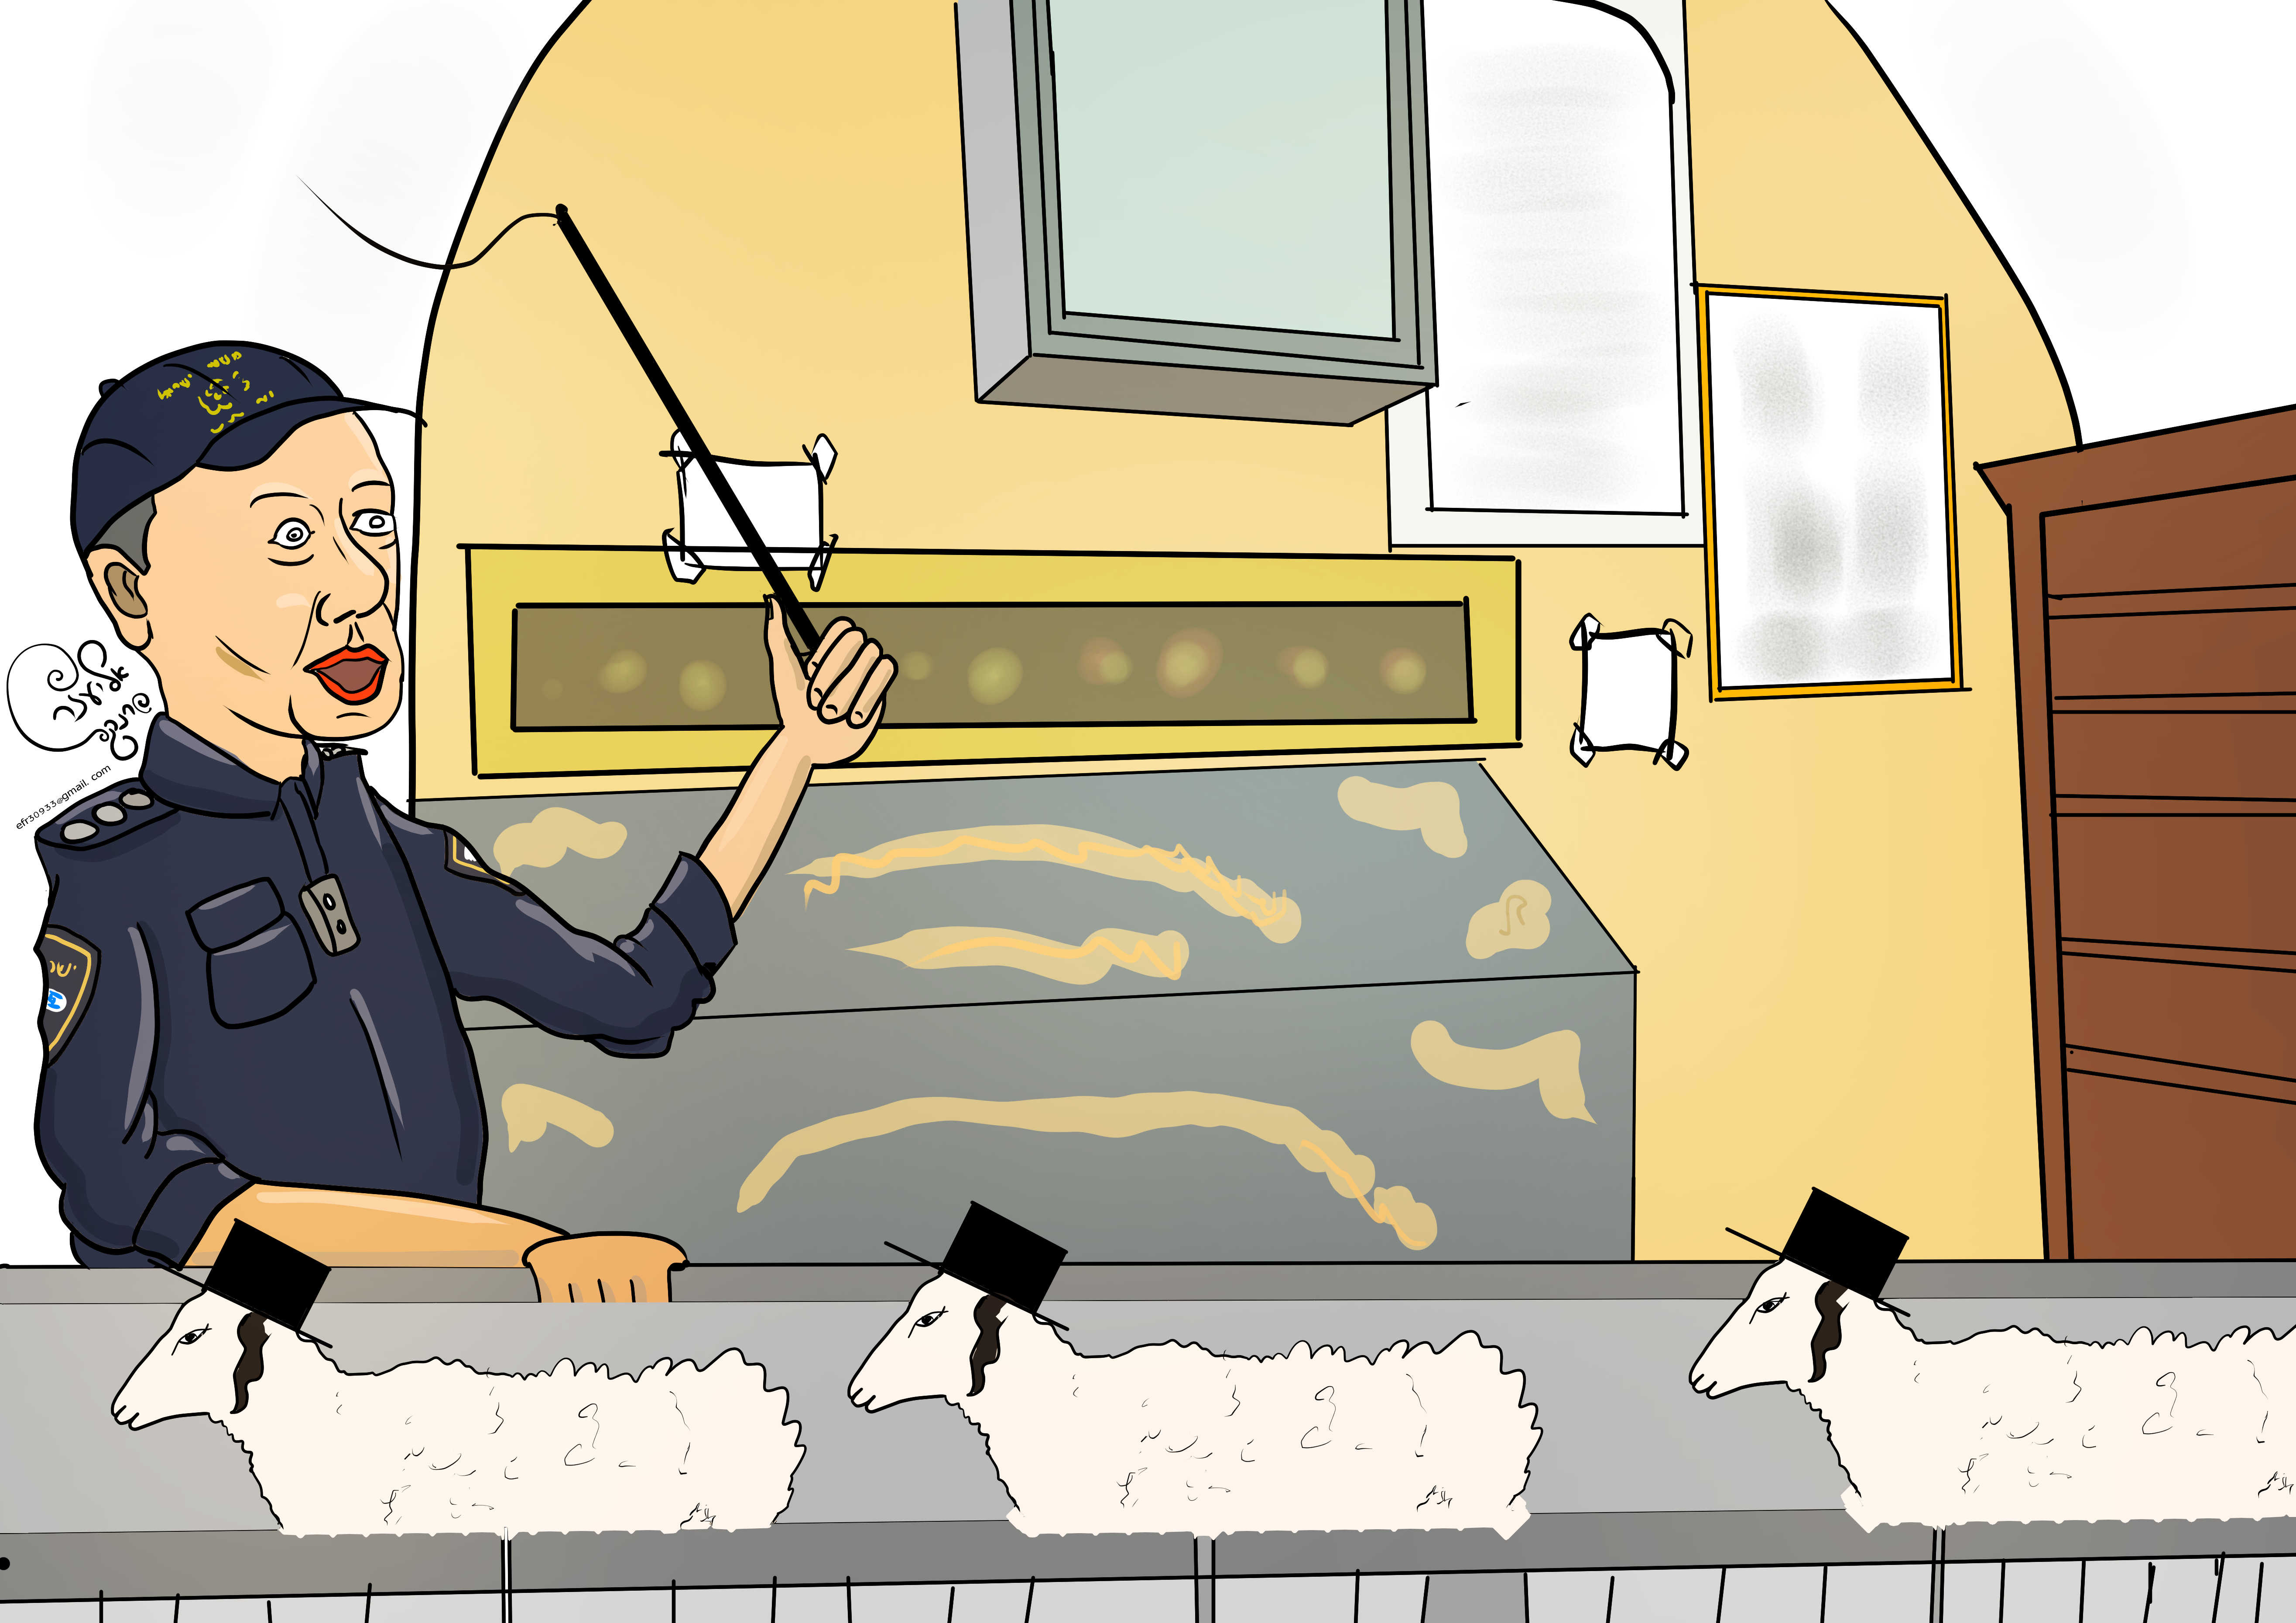 קריקטורה לג  בעומר כבשים איכות נמוכה.jpg